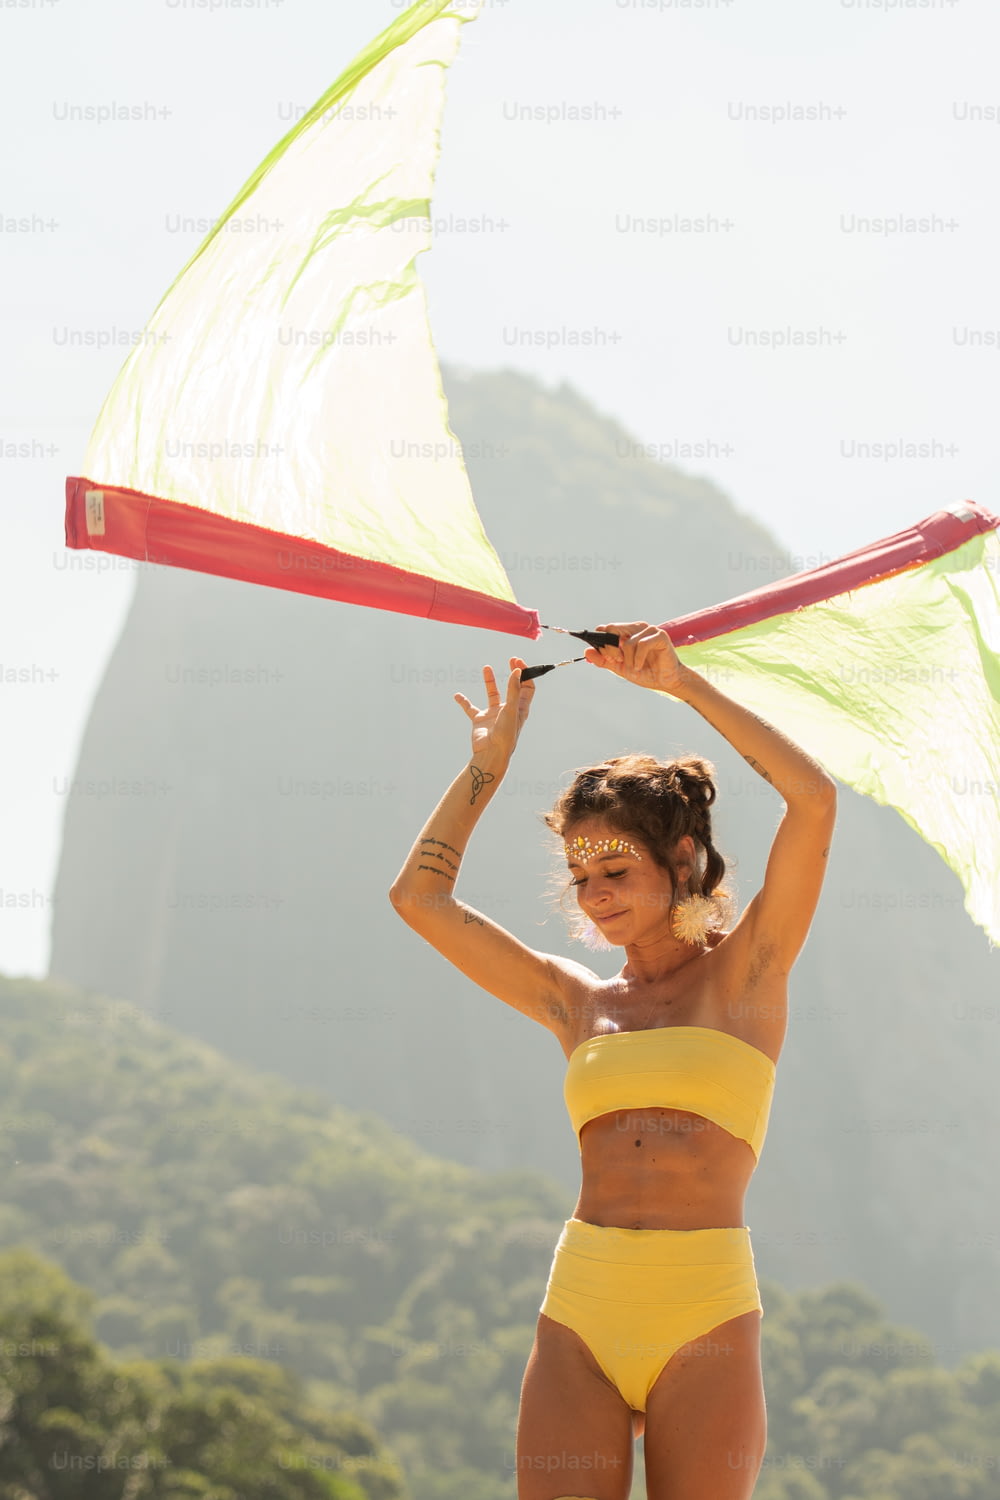 a woman in a yellow bikini holding a kite